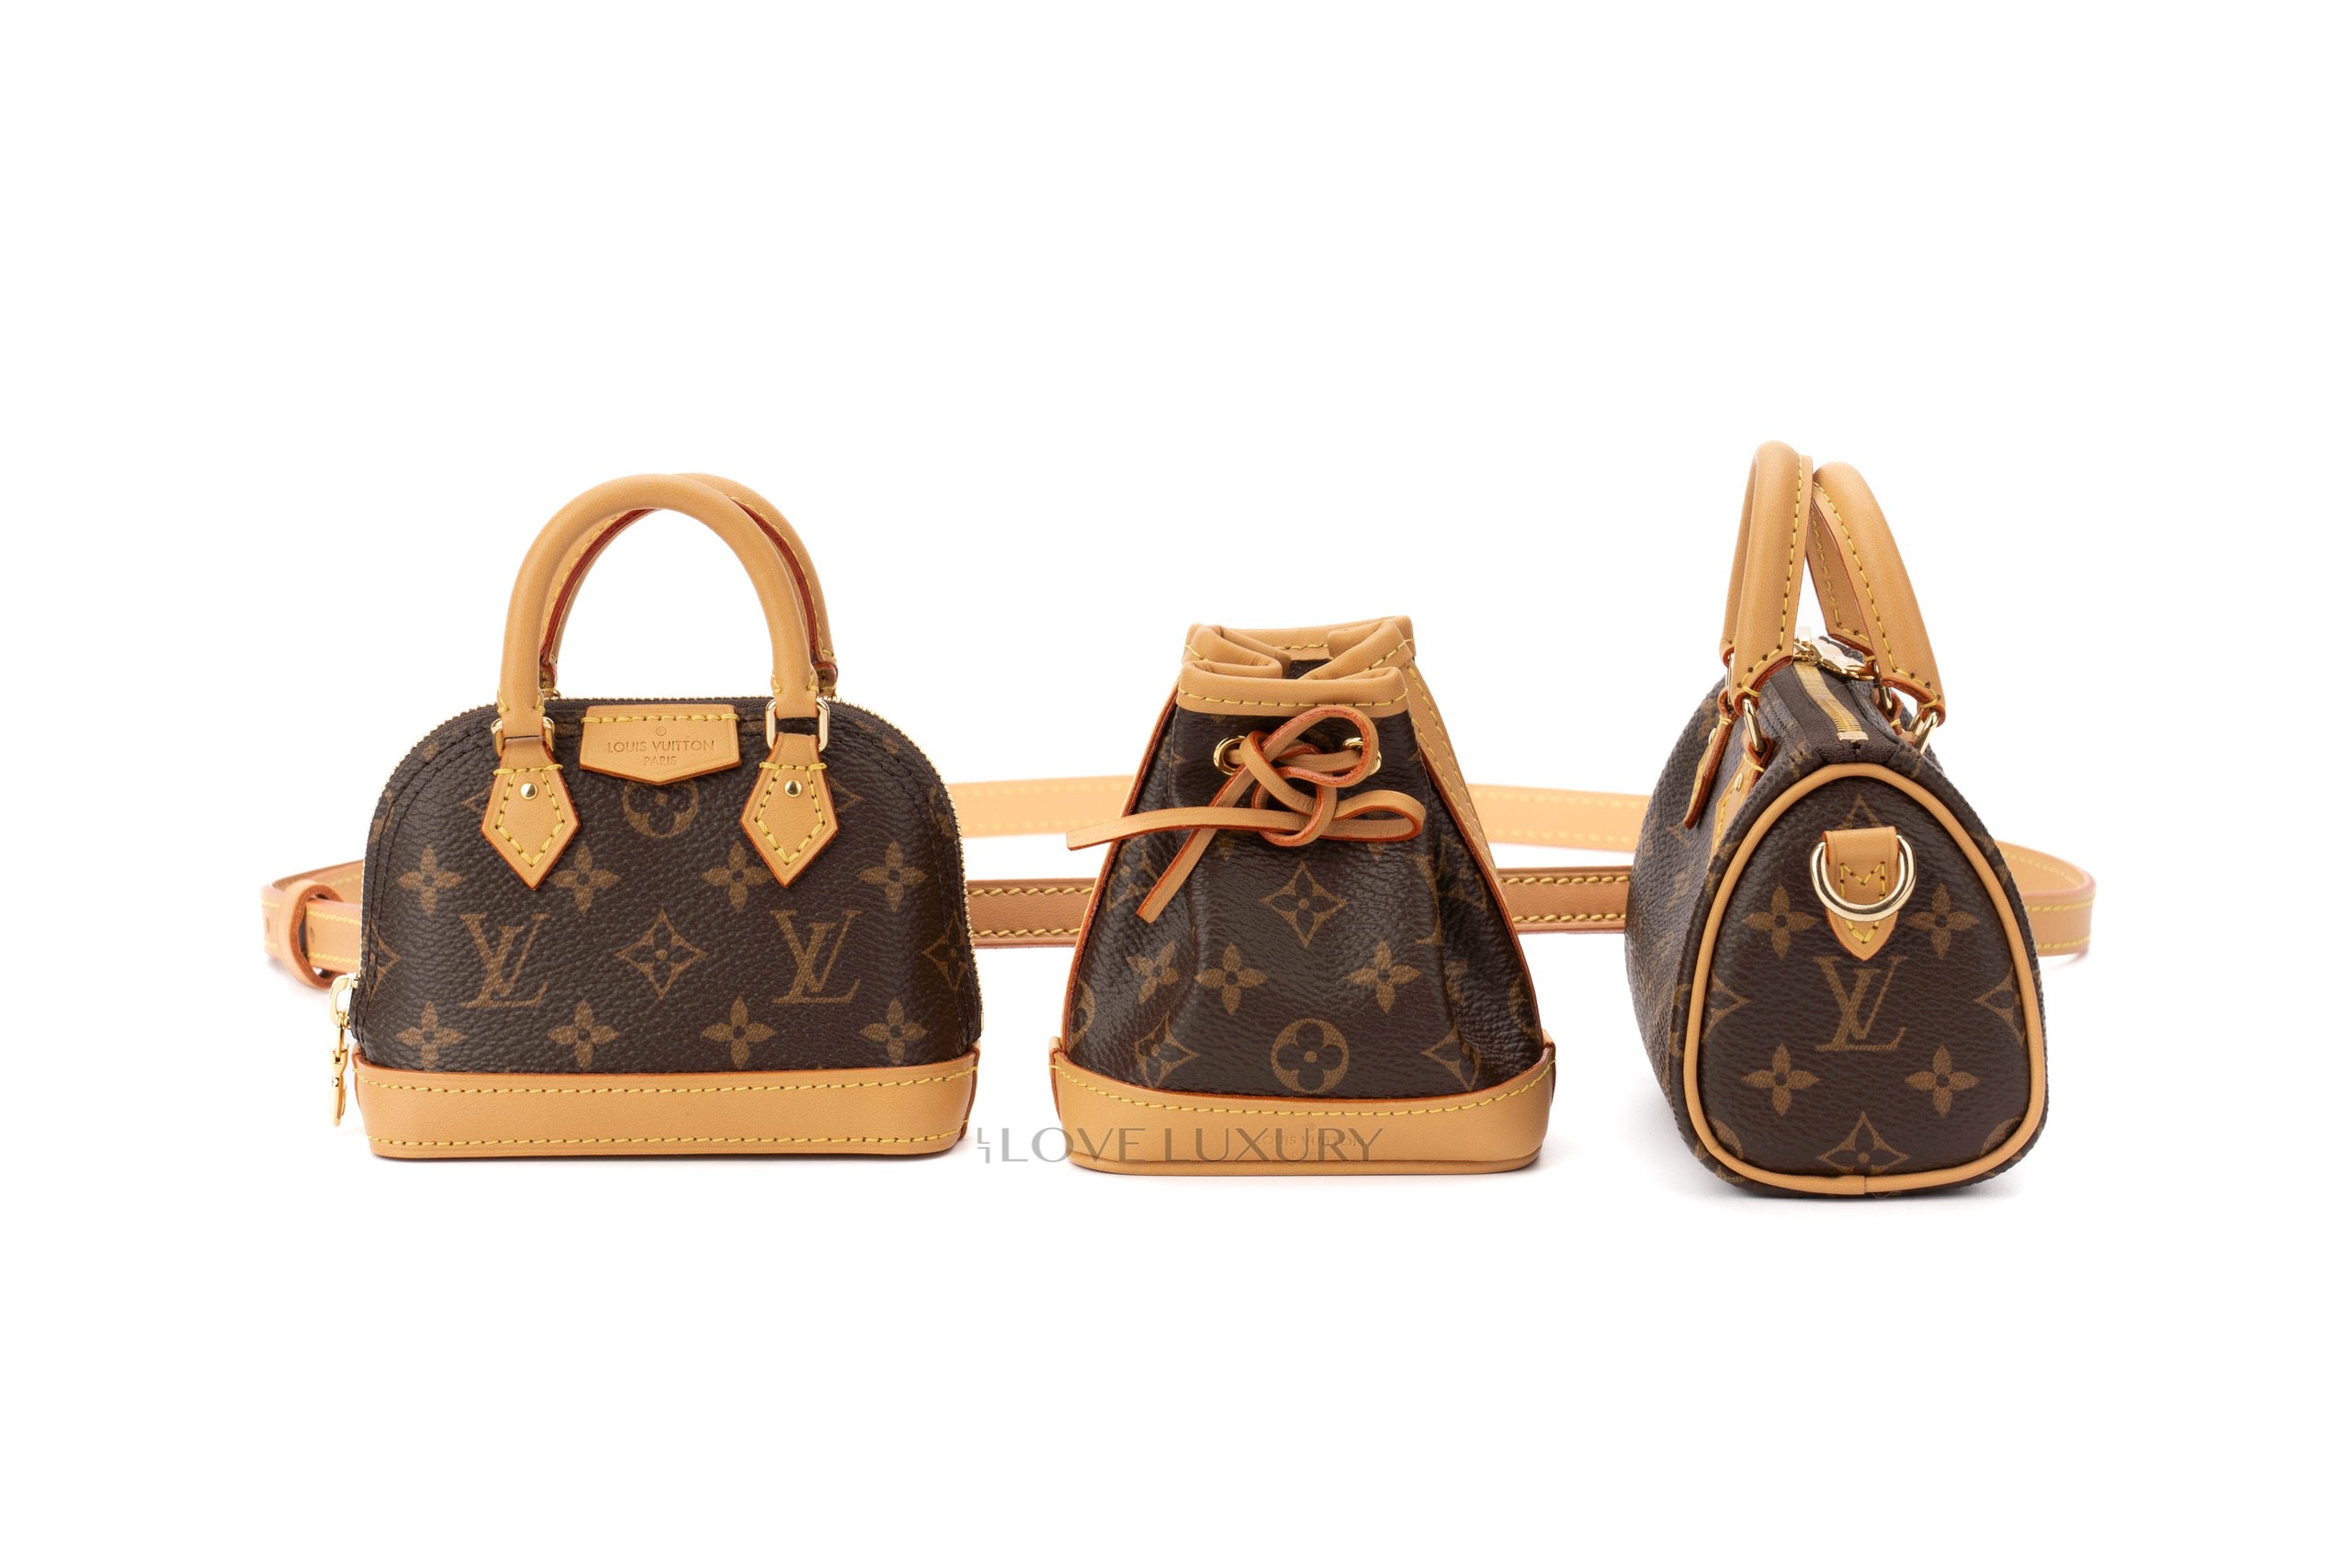 Louis Vuitton Trio Mini Icons